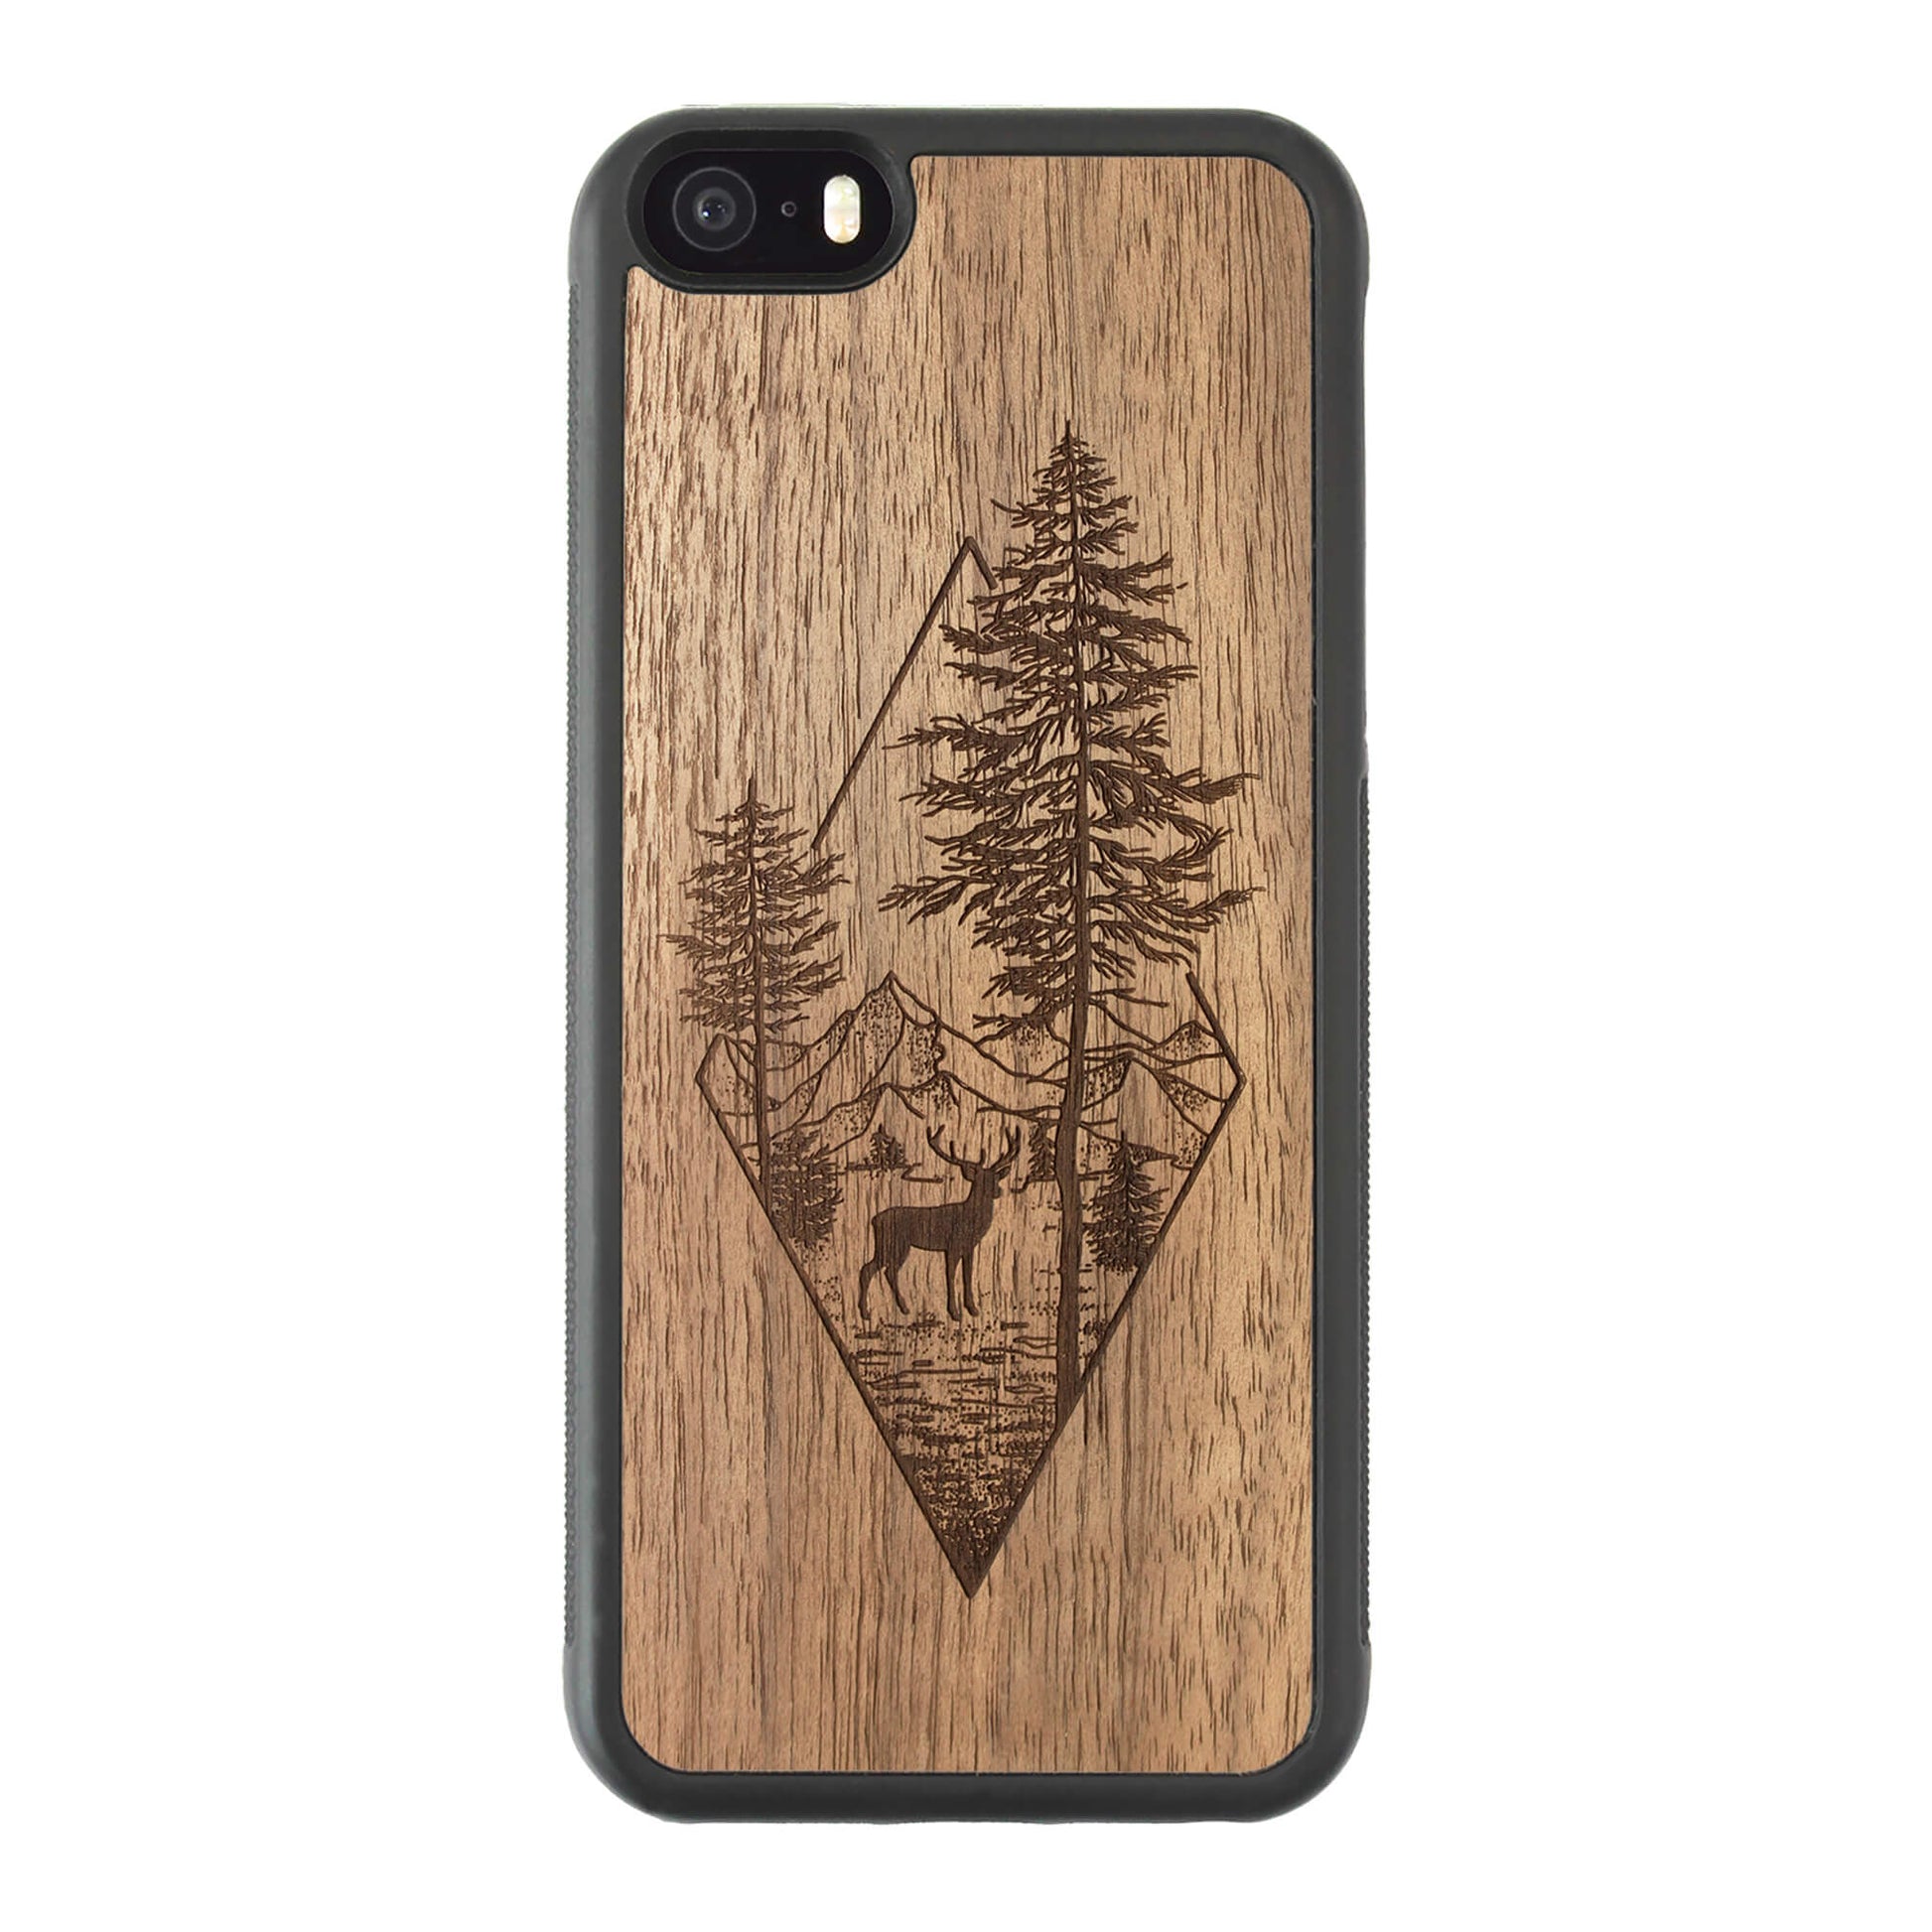 Wooden Case for iPhone 5/5S/SE[2016] Deer Woodland